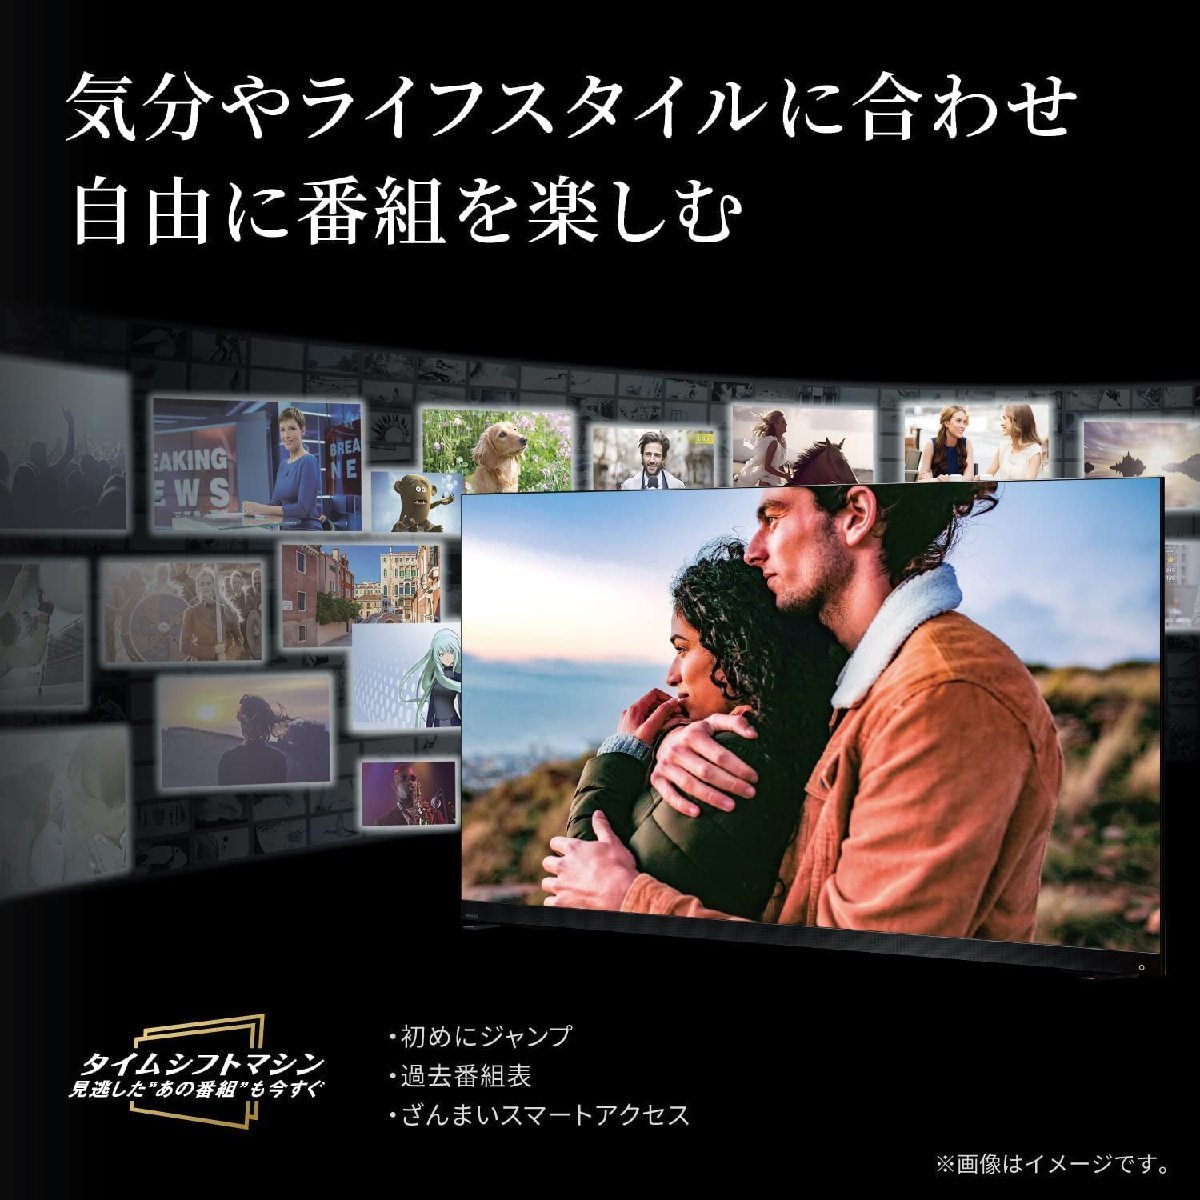  Toshiba 55V type 4K тюнер встроенный жидкокристаллический телевизор REGZA 55Z770L игра режим /Netfrix/Amazon видео /youtube самовывоз возможно 2024/3~ гарантия 